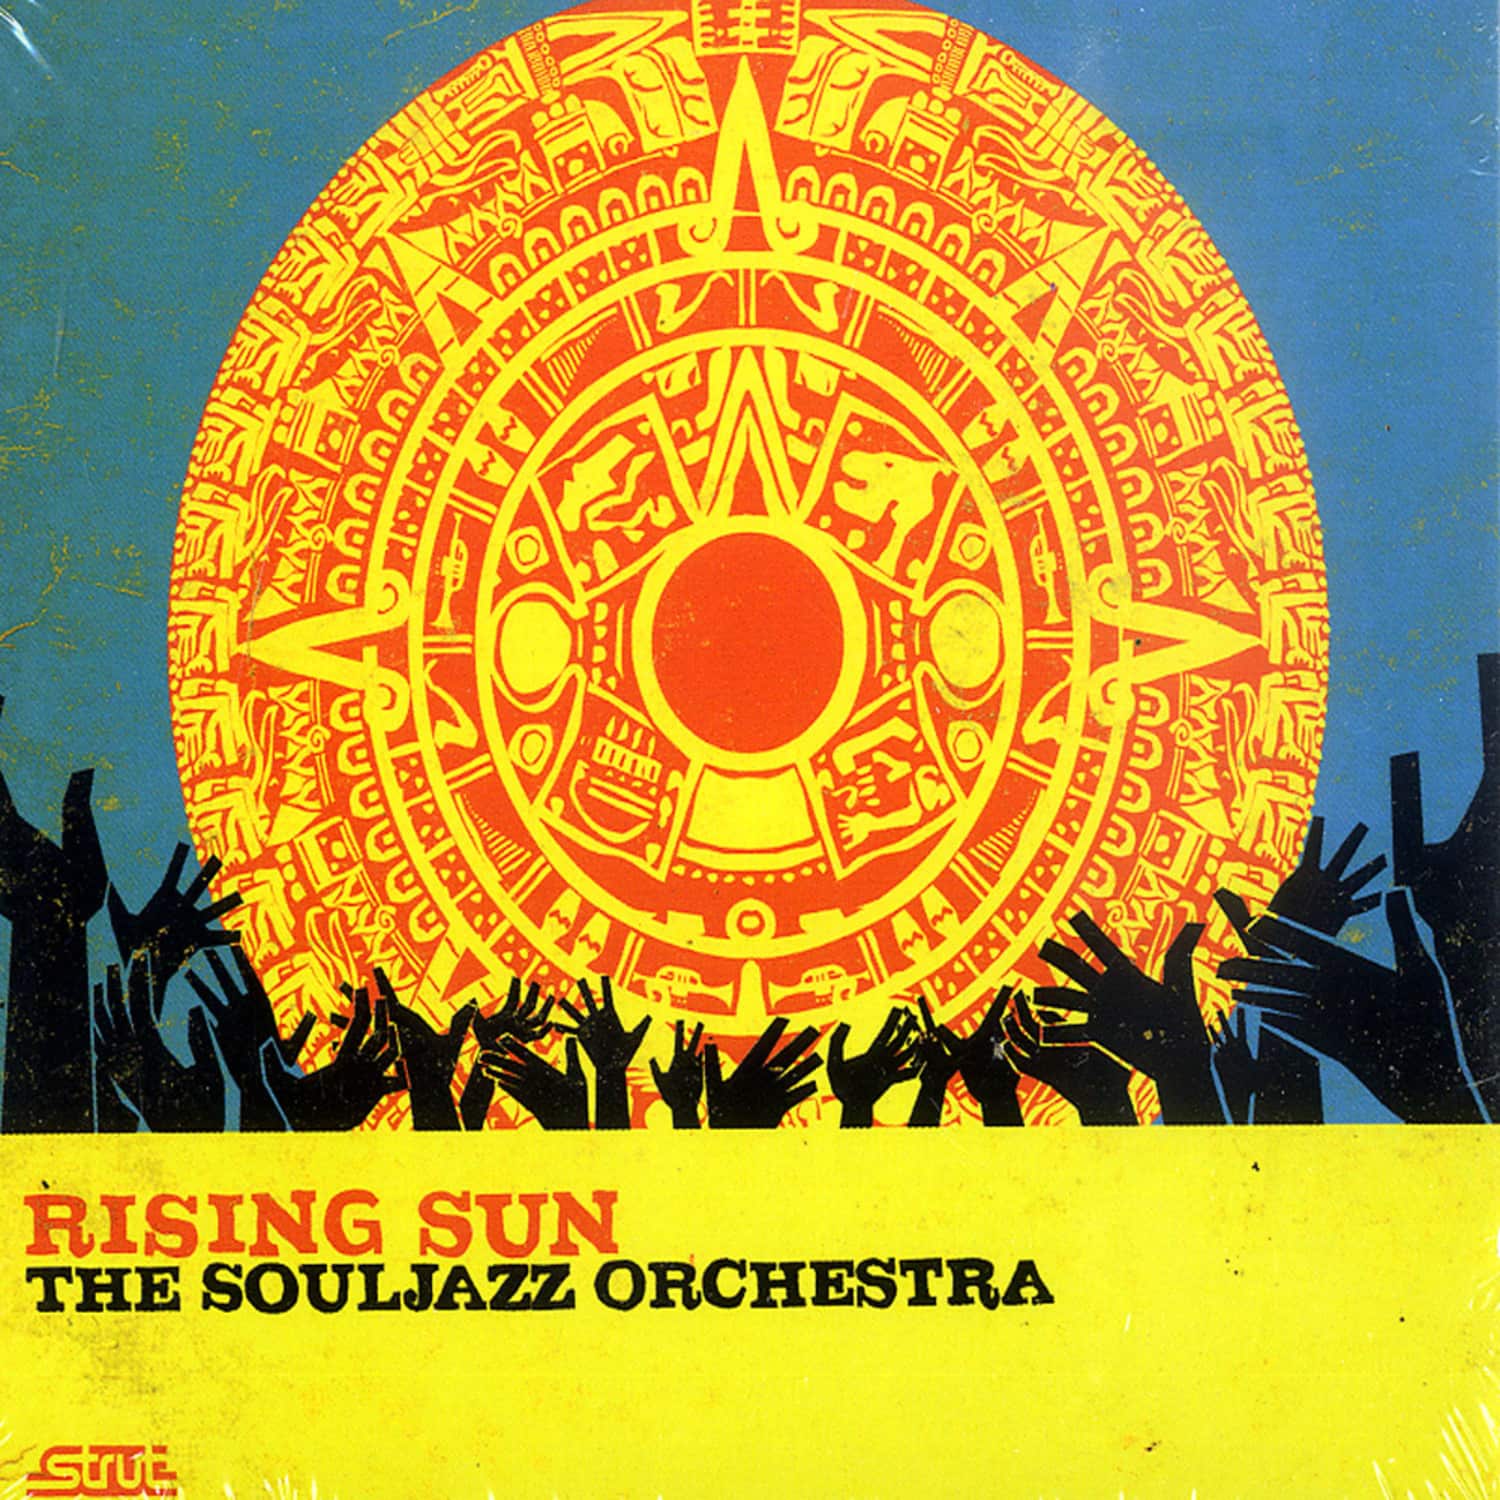 The Souljazz Orchestra - RISING SUN 